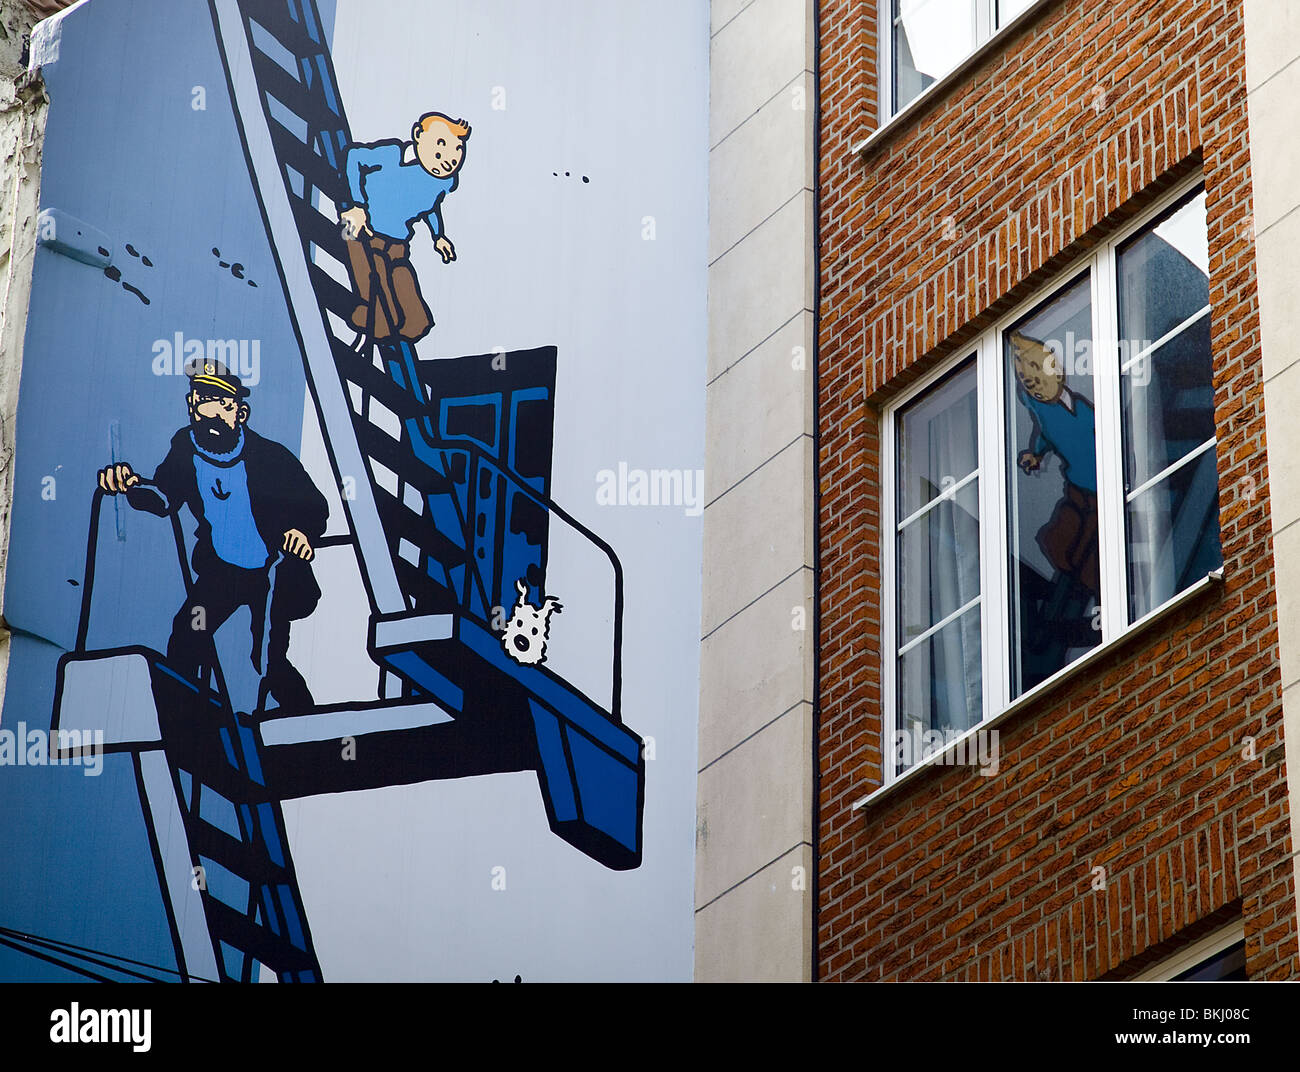 Tintin en peinture murale. Bruxelles. Belgique Banque D'Images